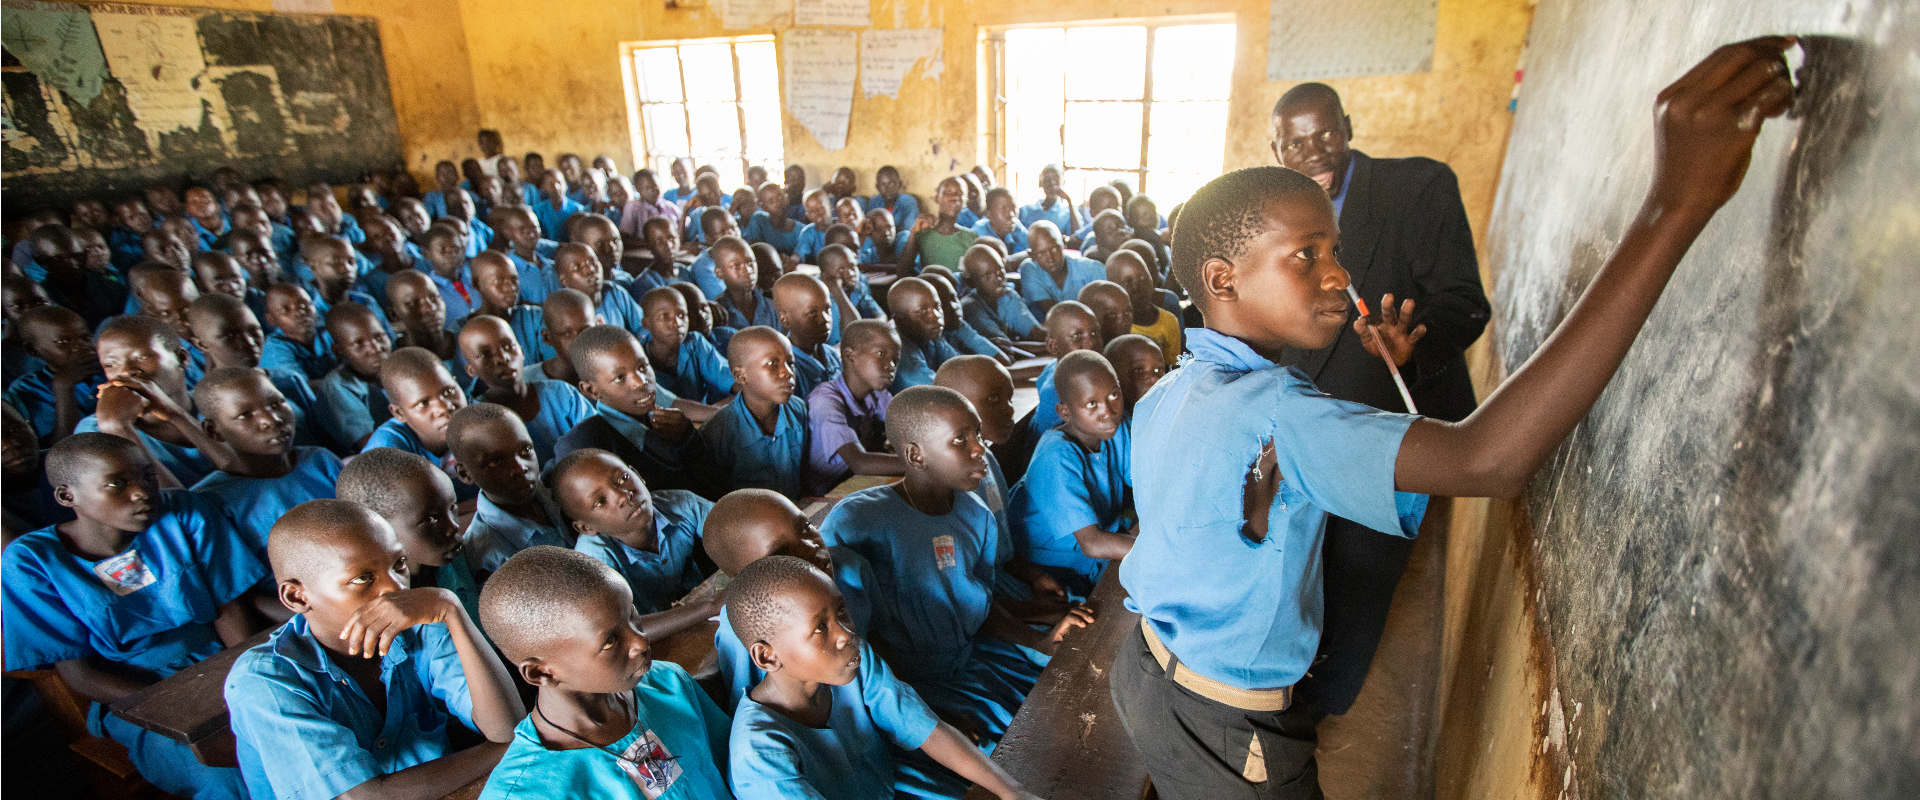 Überfüllter Klassenraum in Uganda